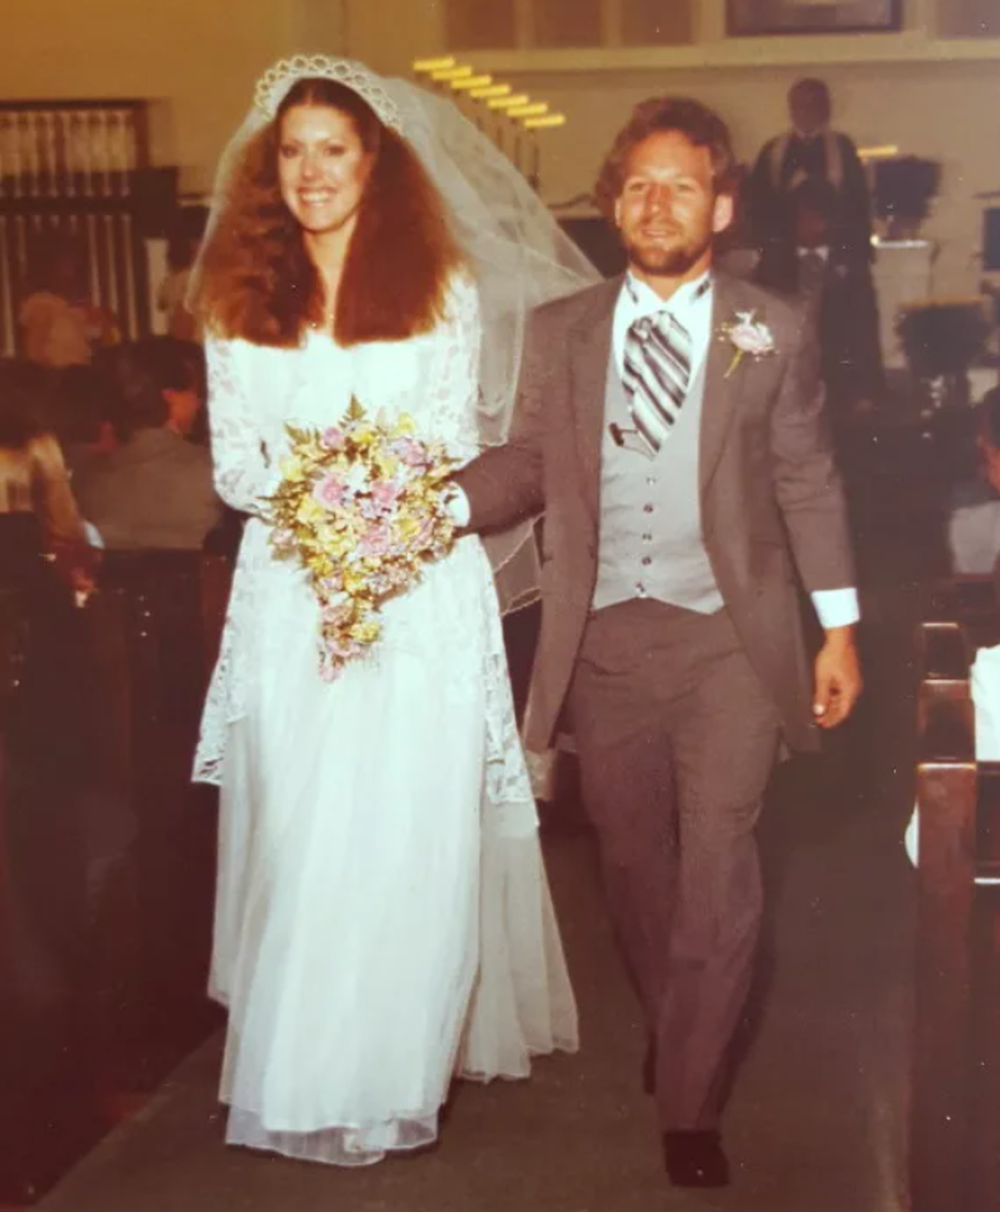 Váy cưới ‘vượt thời gian’ 60 năm được 3 thế hệ cô dâu cùng 1 nhà mặc khi kết hôn - Ảnh 2.